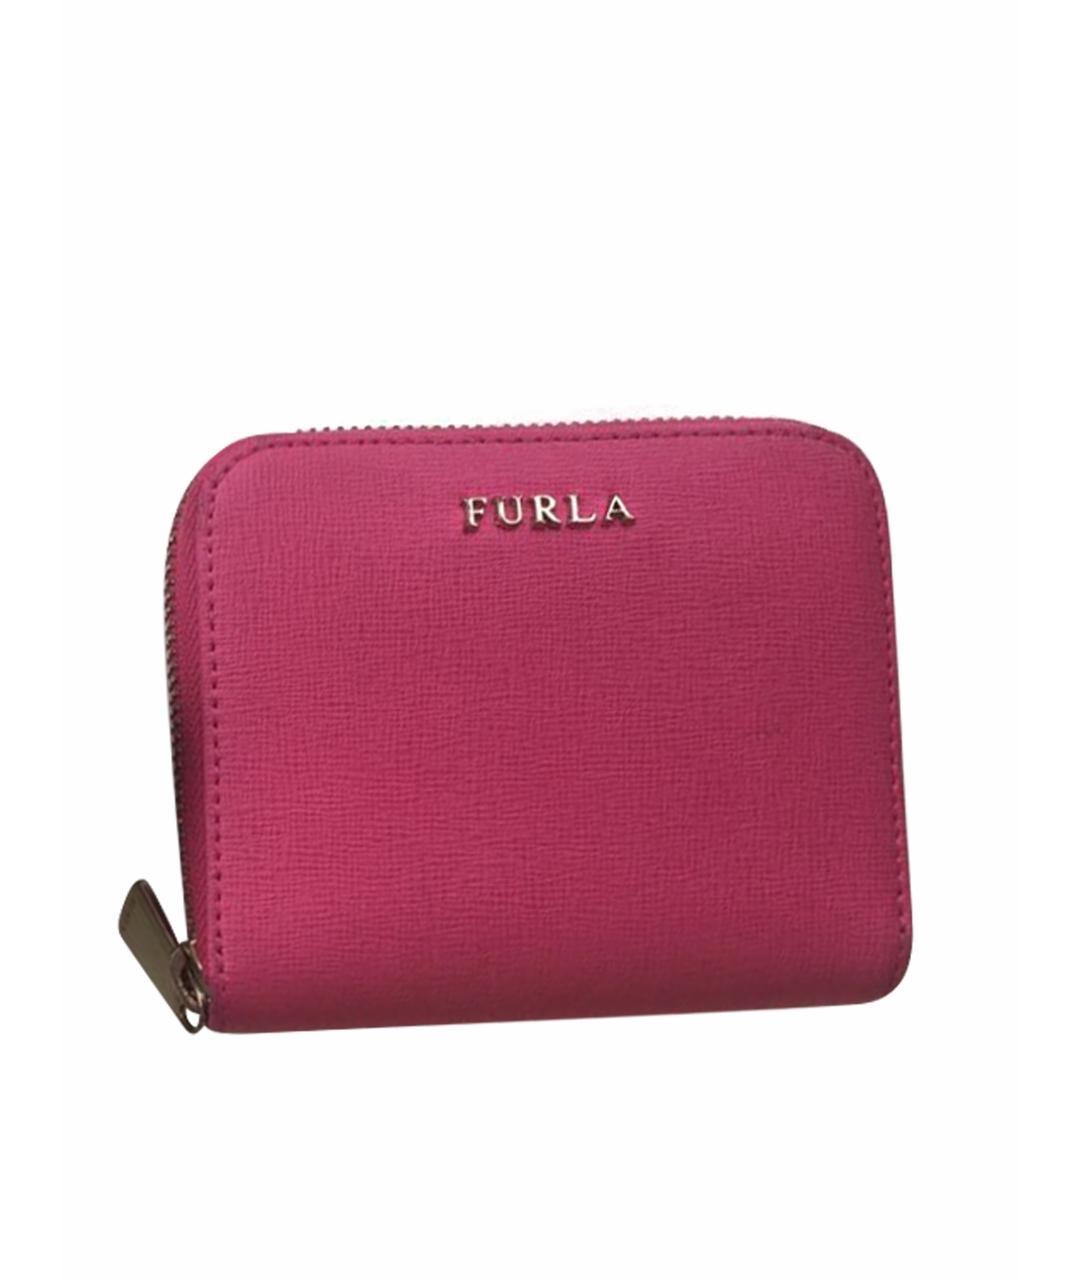 FURLA Розовый кожаный кошелек, фото 1